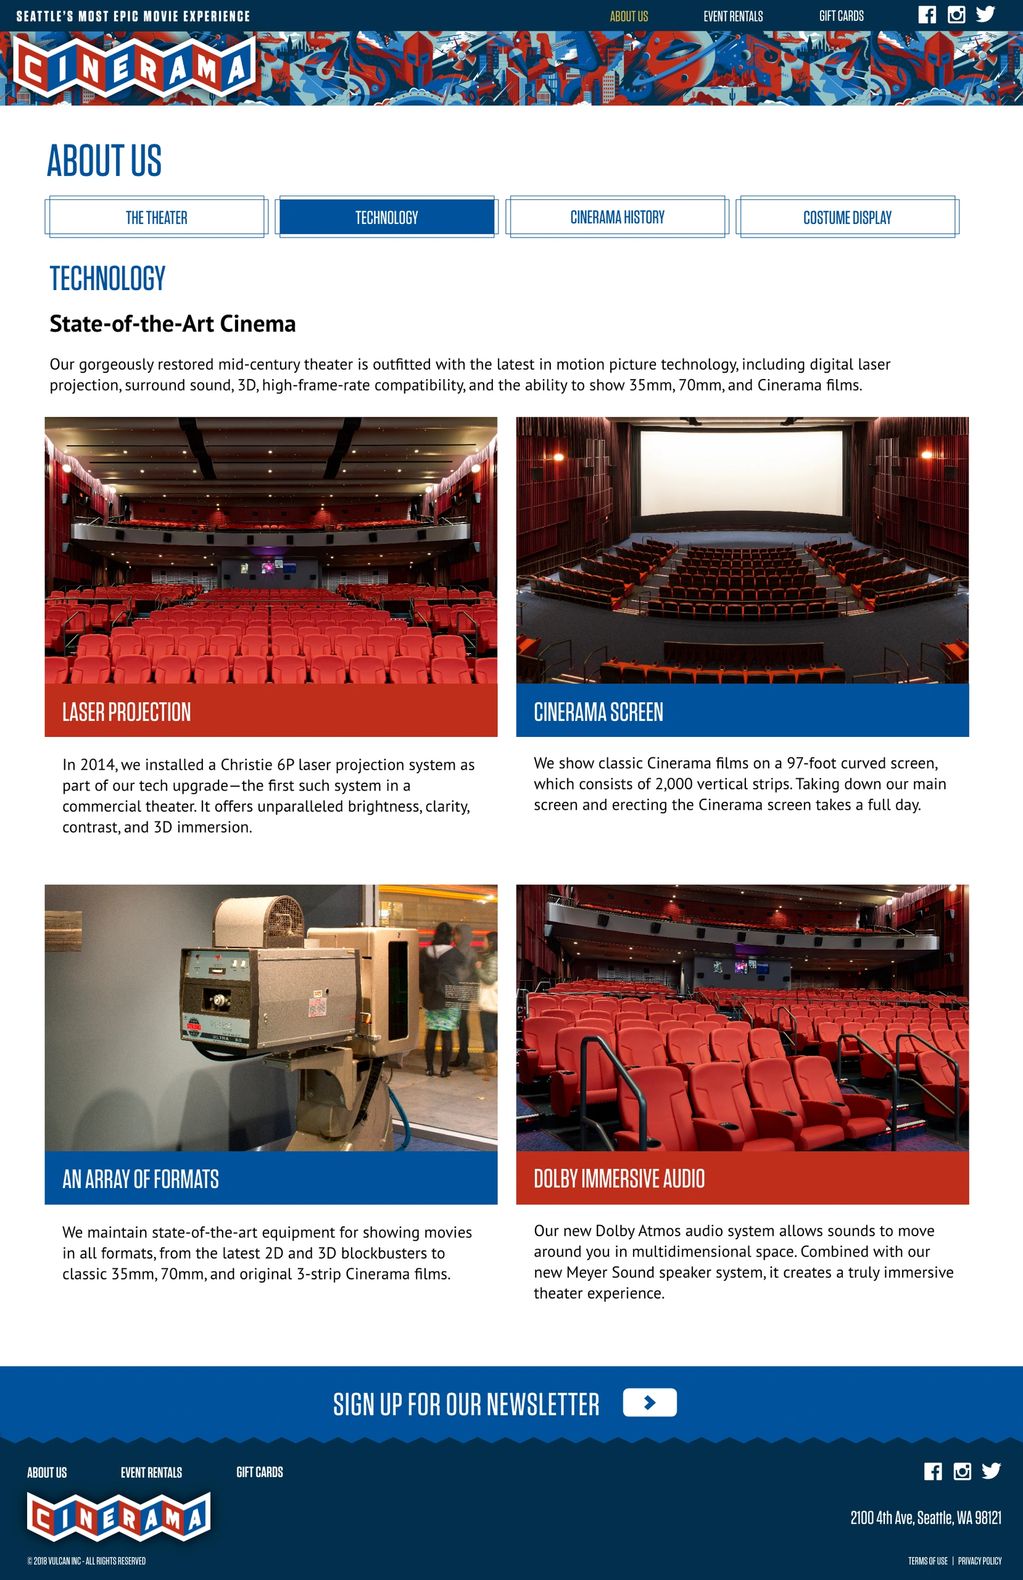 Four interior photos of Cinerama movie theater.